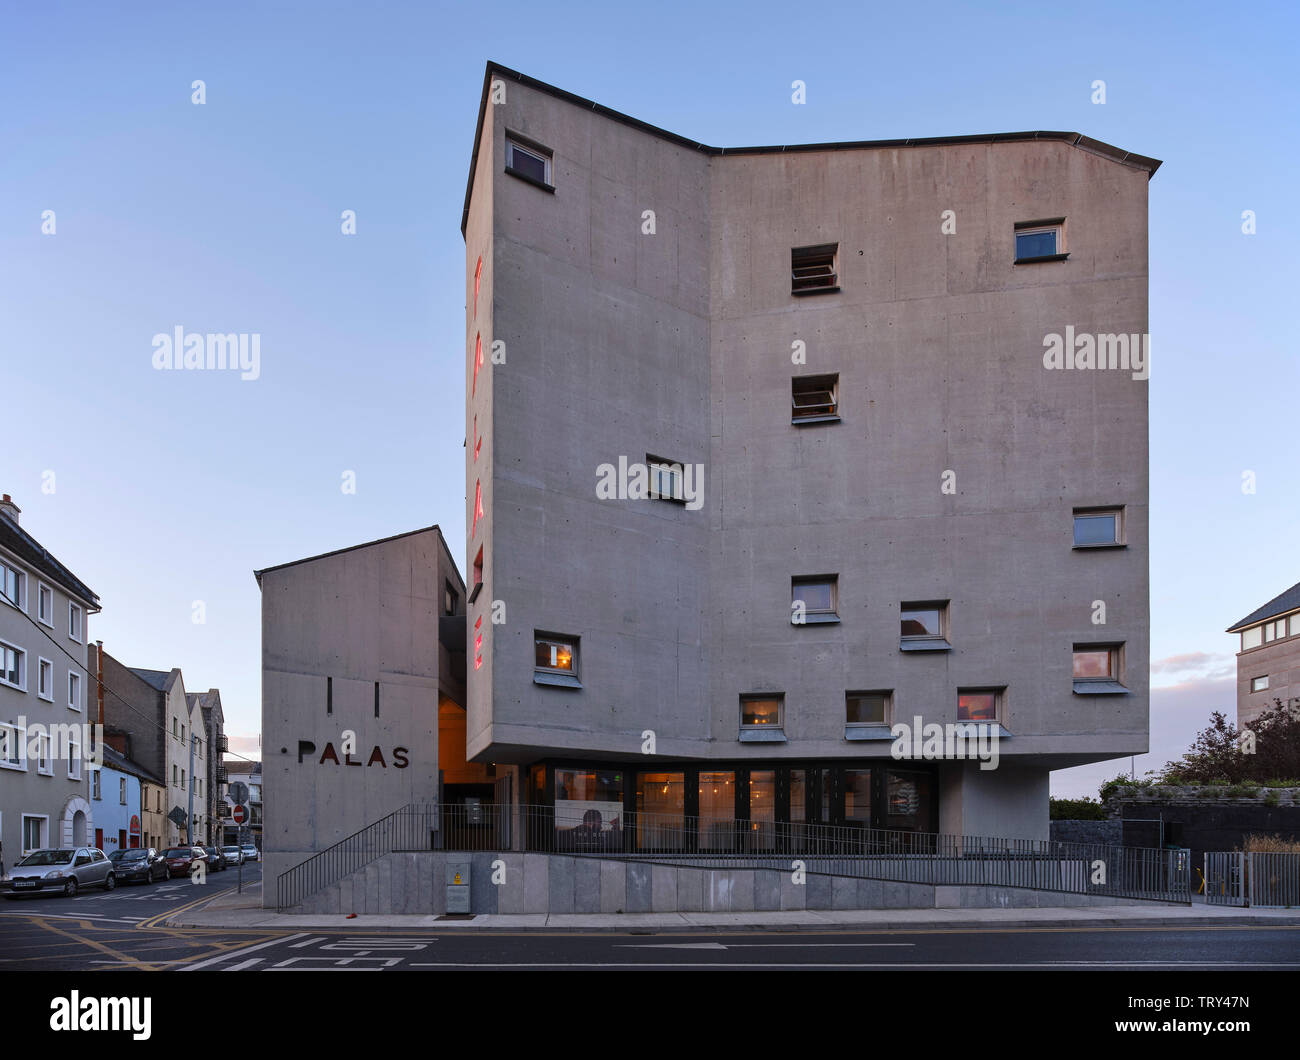 Crépuscule sur la fonte la façade en béton encastrés avec des fenêtres carrées. Pálás Cinéma, Galway, Irlande. Architecte : dePaor, 2017. Banque D'Images